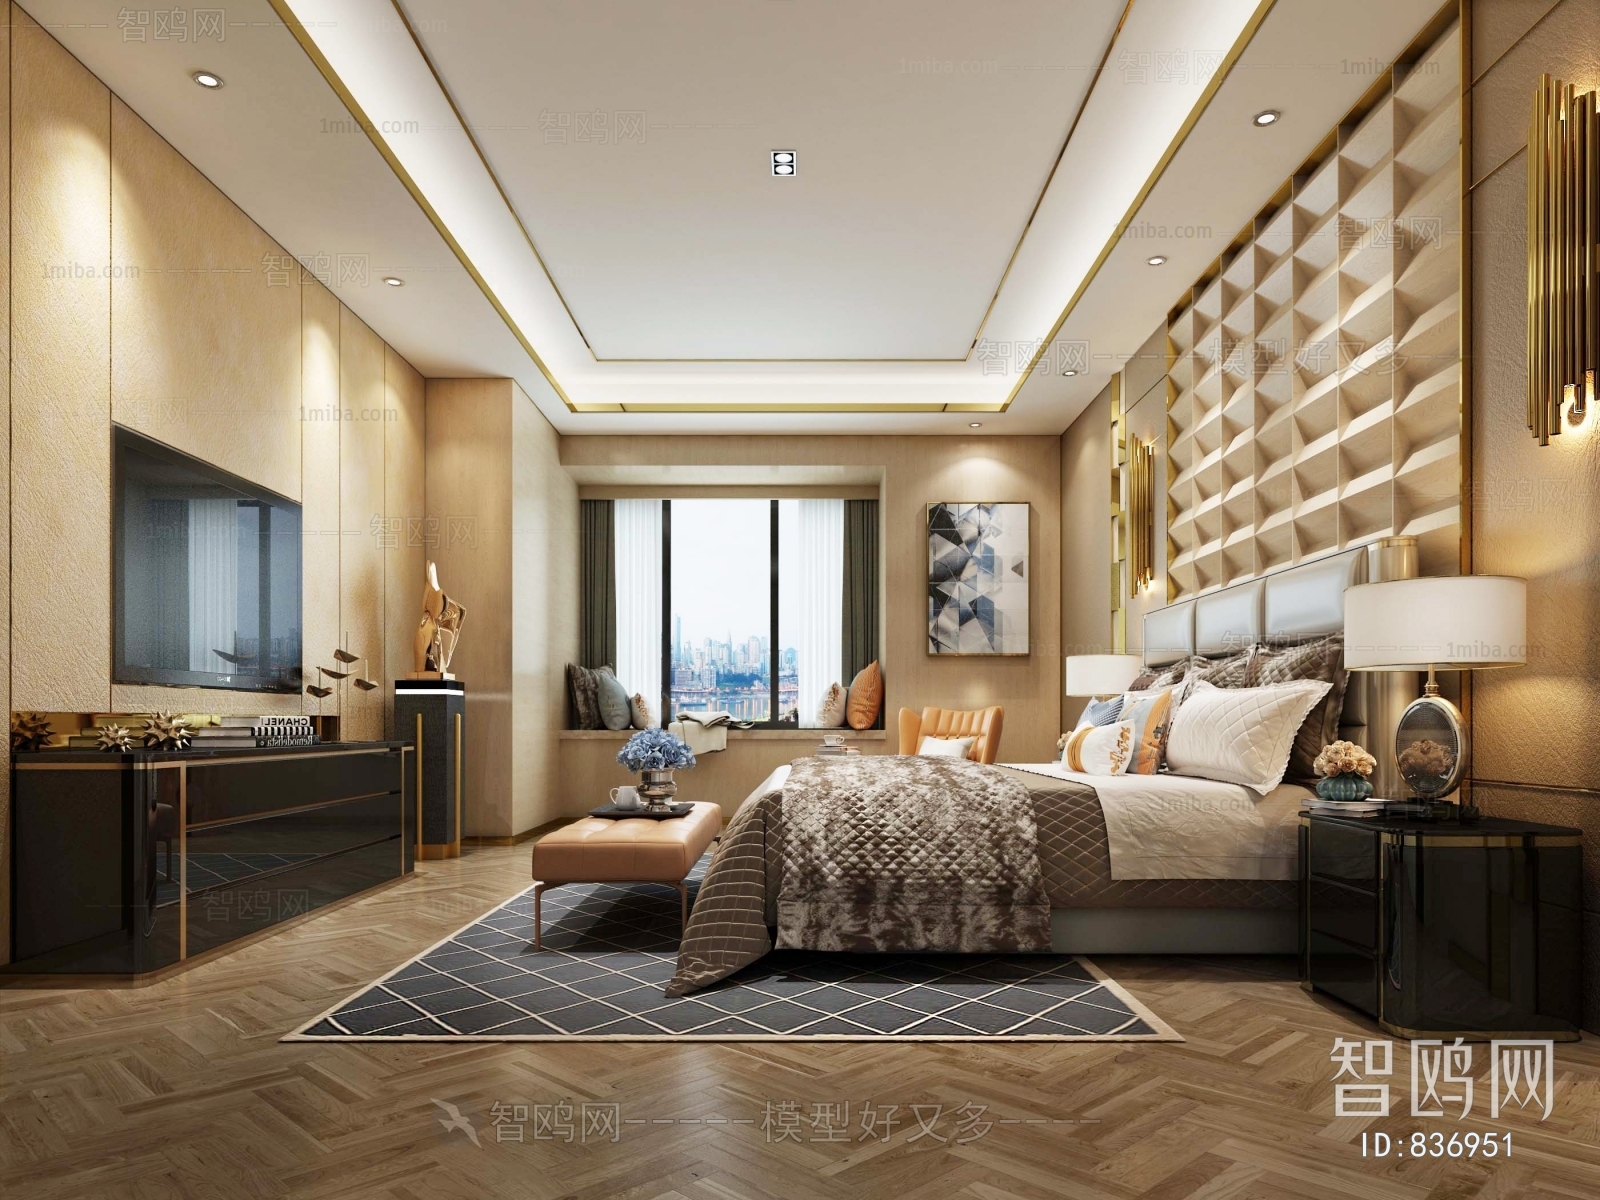 Hong Kong Style Bedroom